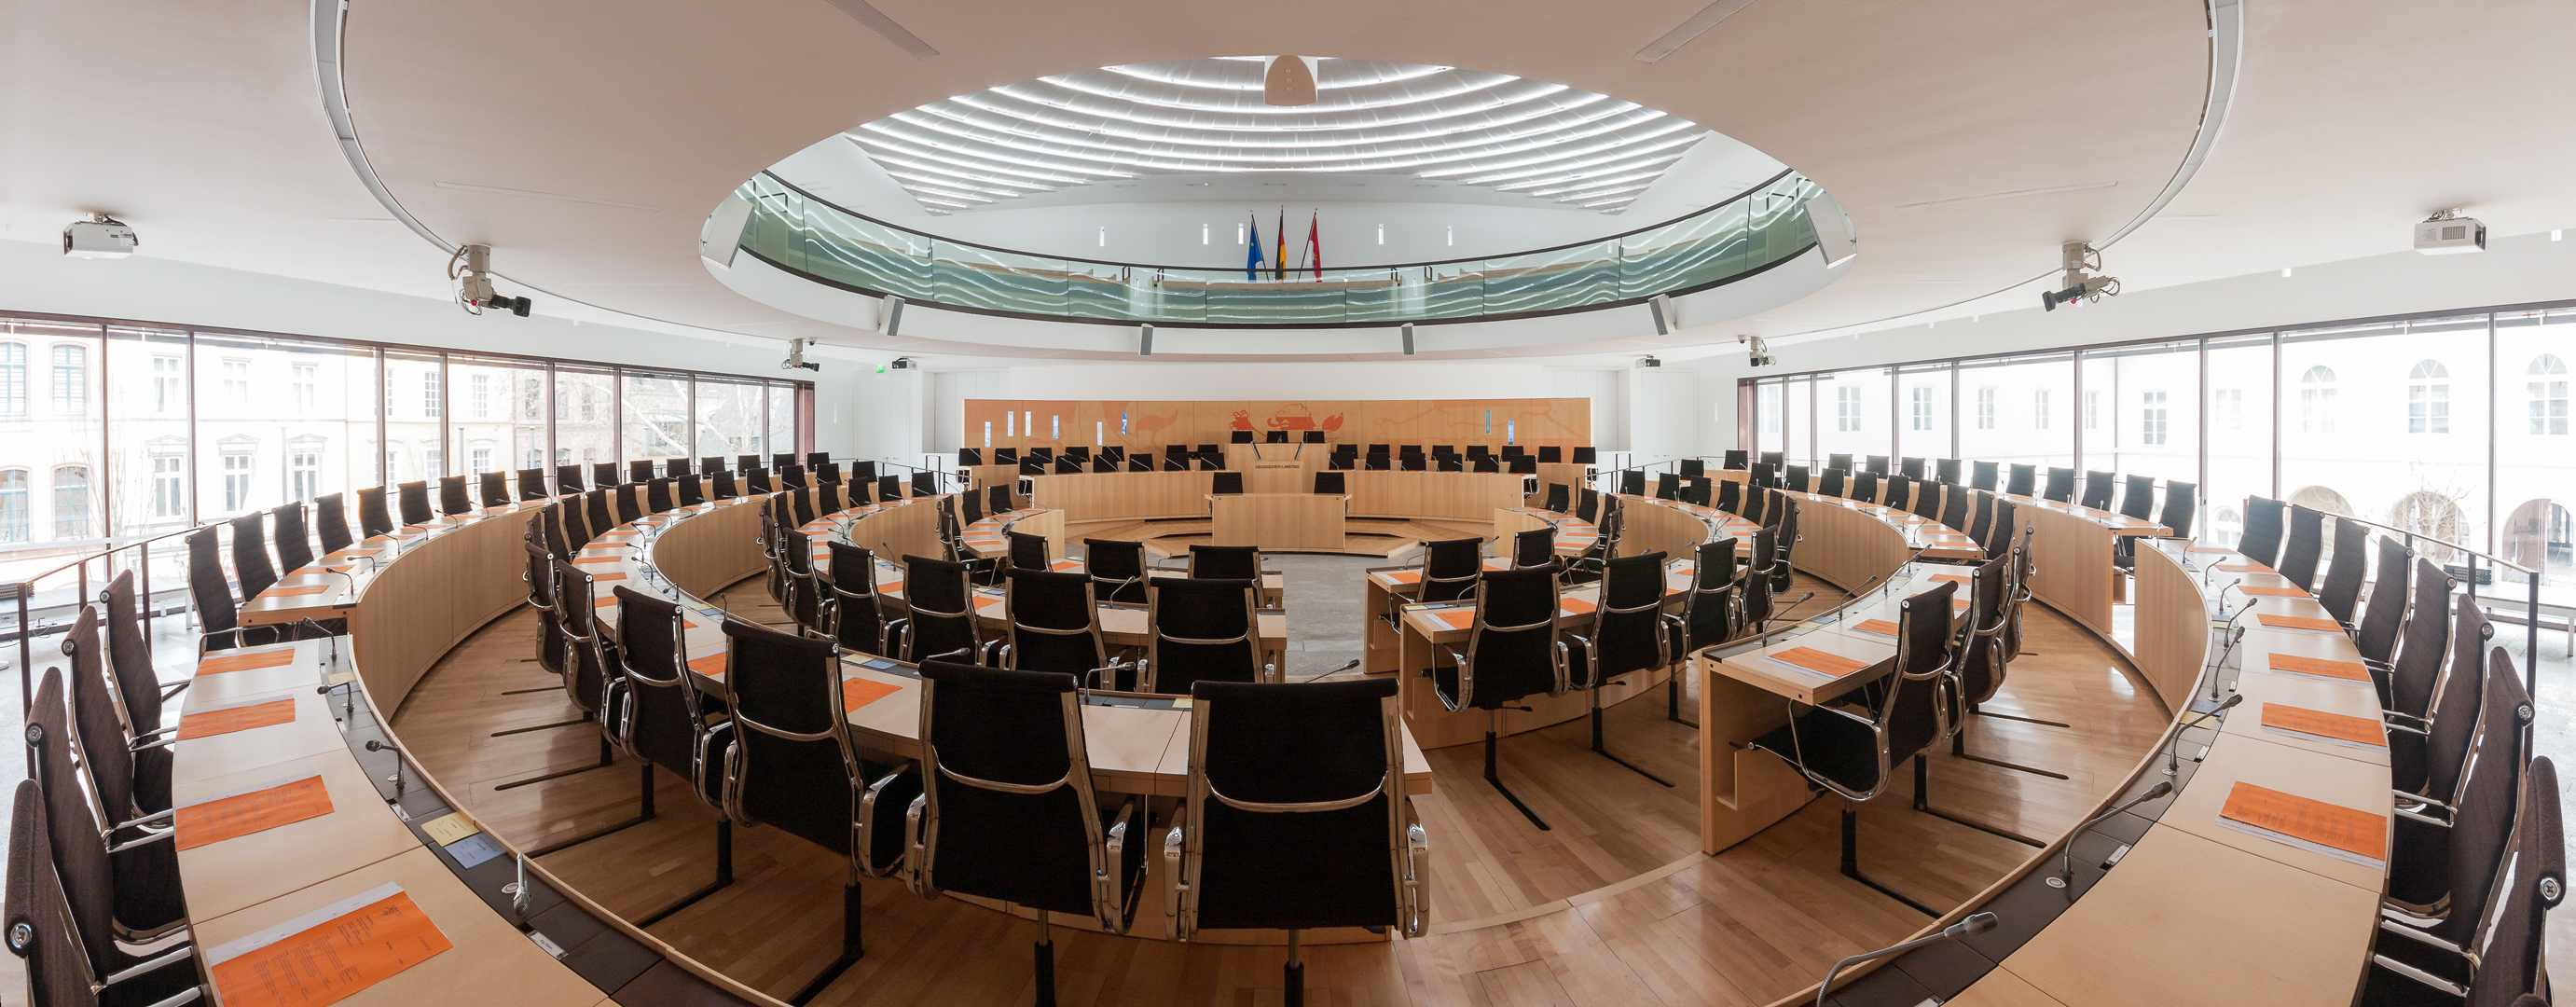 Hessischer Landtag - Plenarsaal